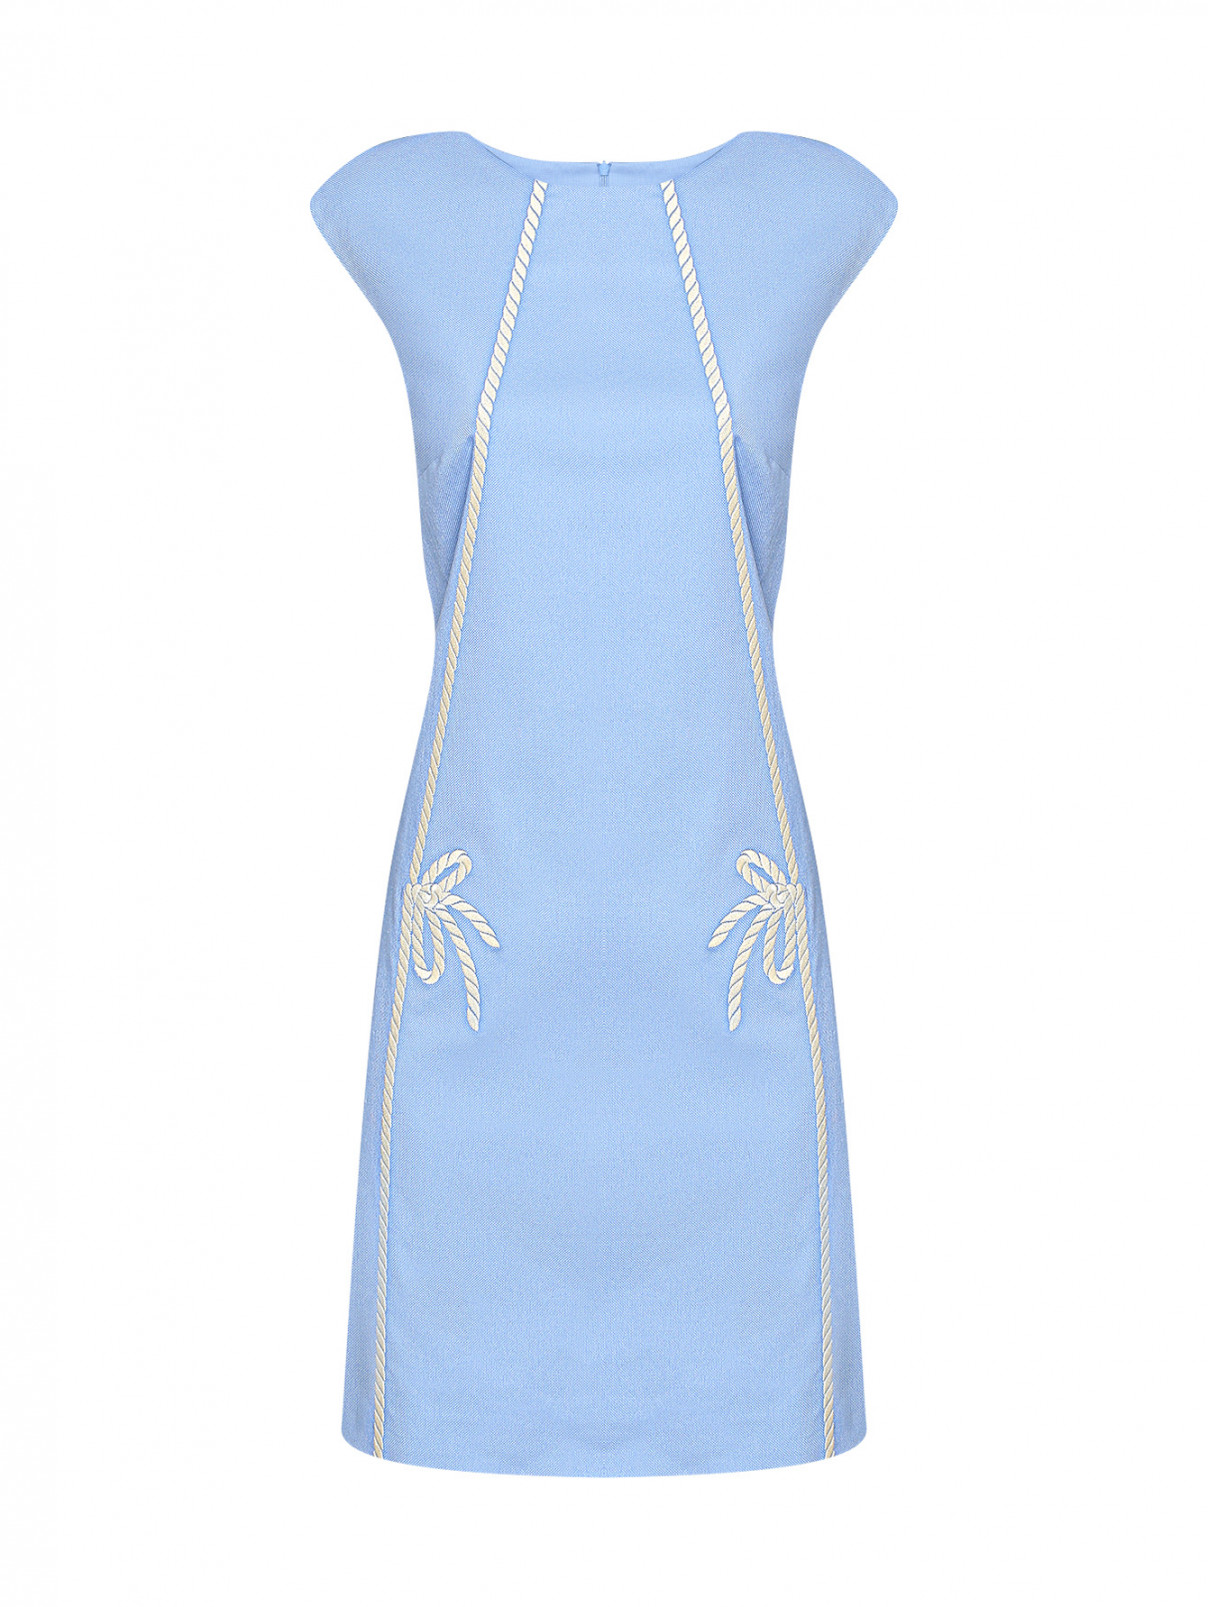 Платье из хлопка с вышивкой Moschino Boutique  –  Общий вид  – Цвет:  Синий